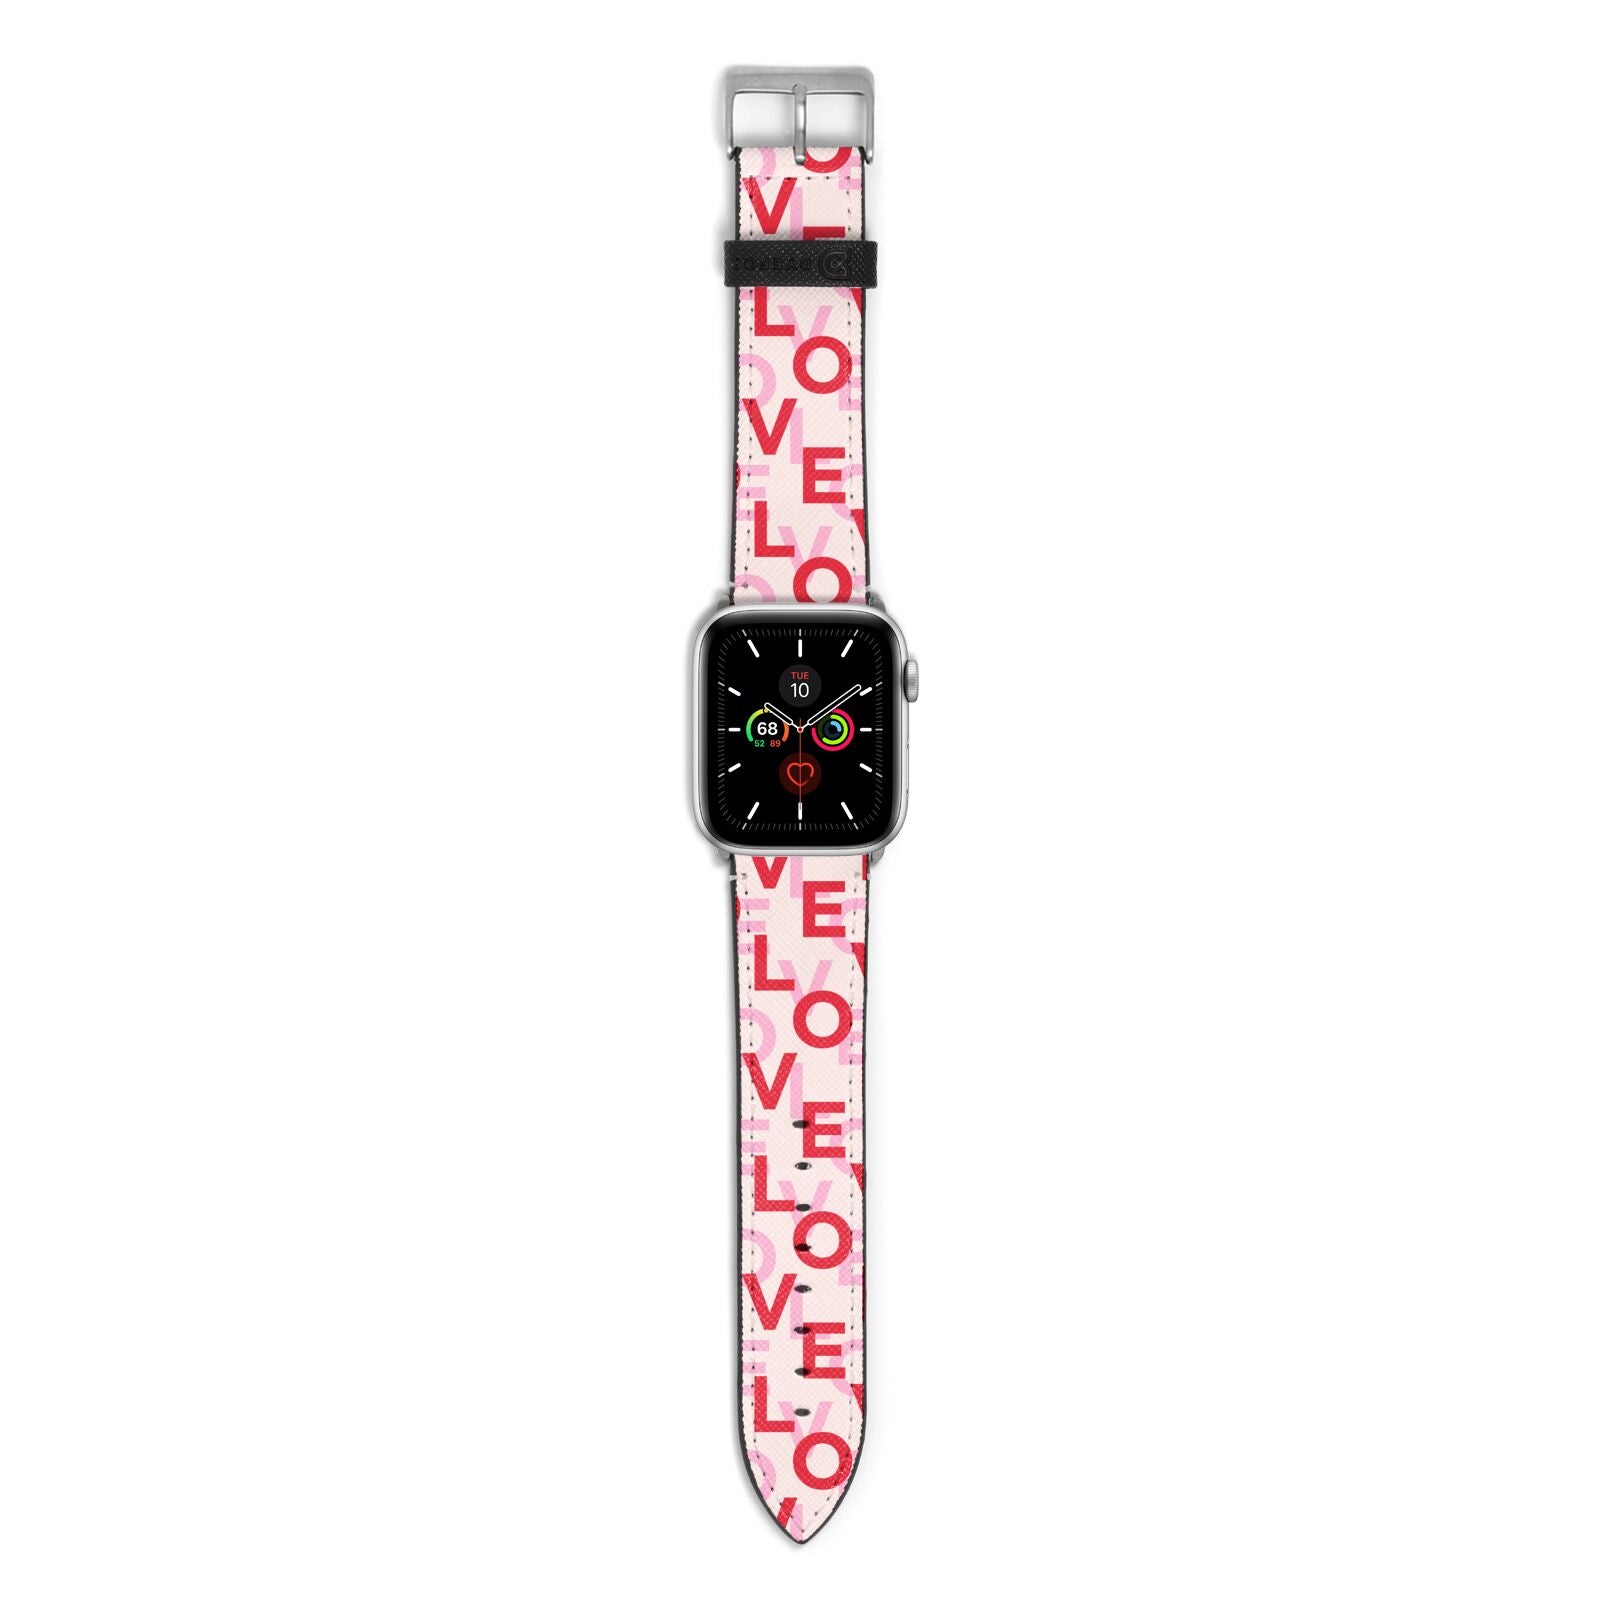 Love Valentine Apple Watch Strap with Silver Hardware